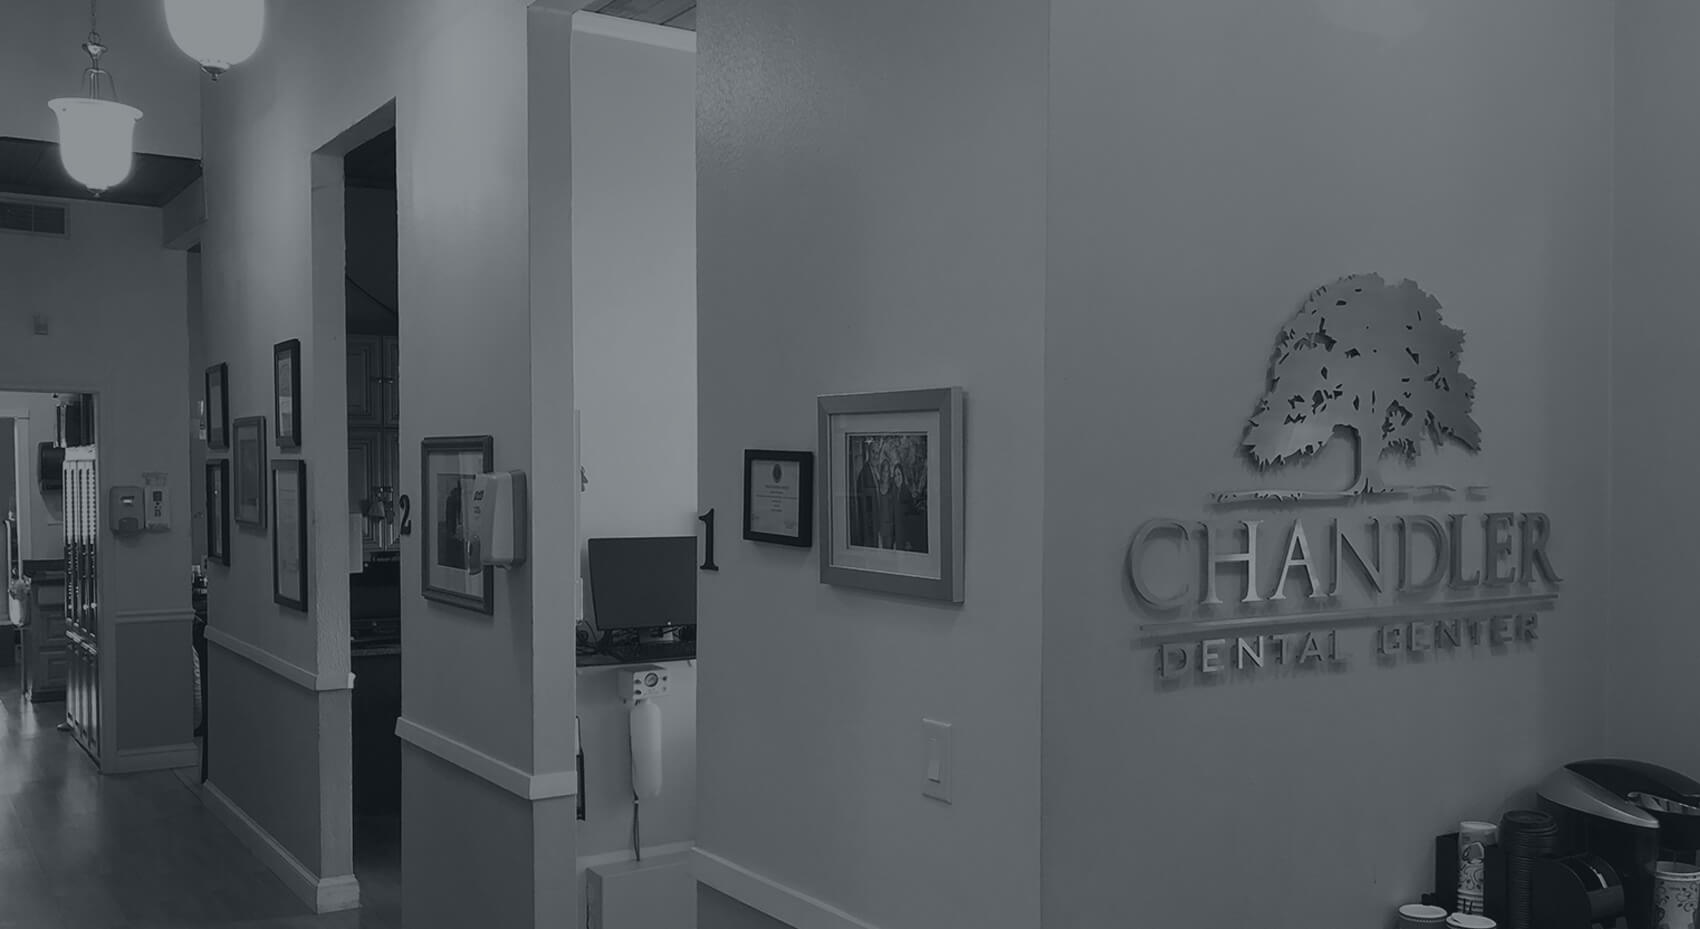 chandler dental center office